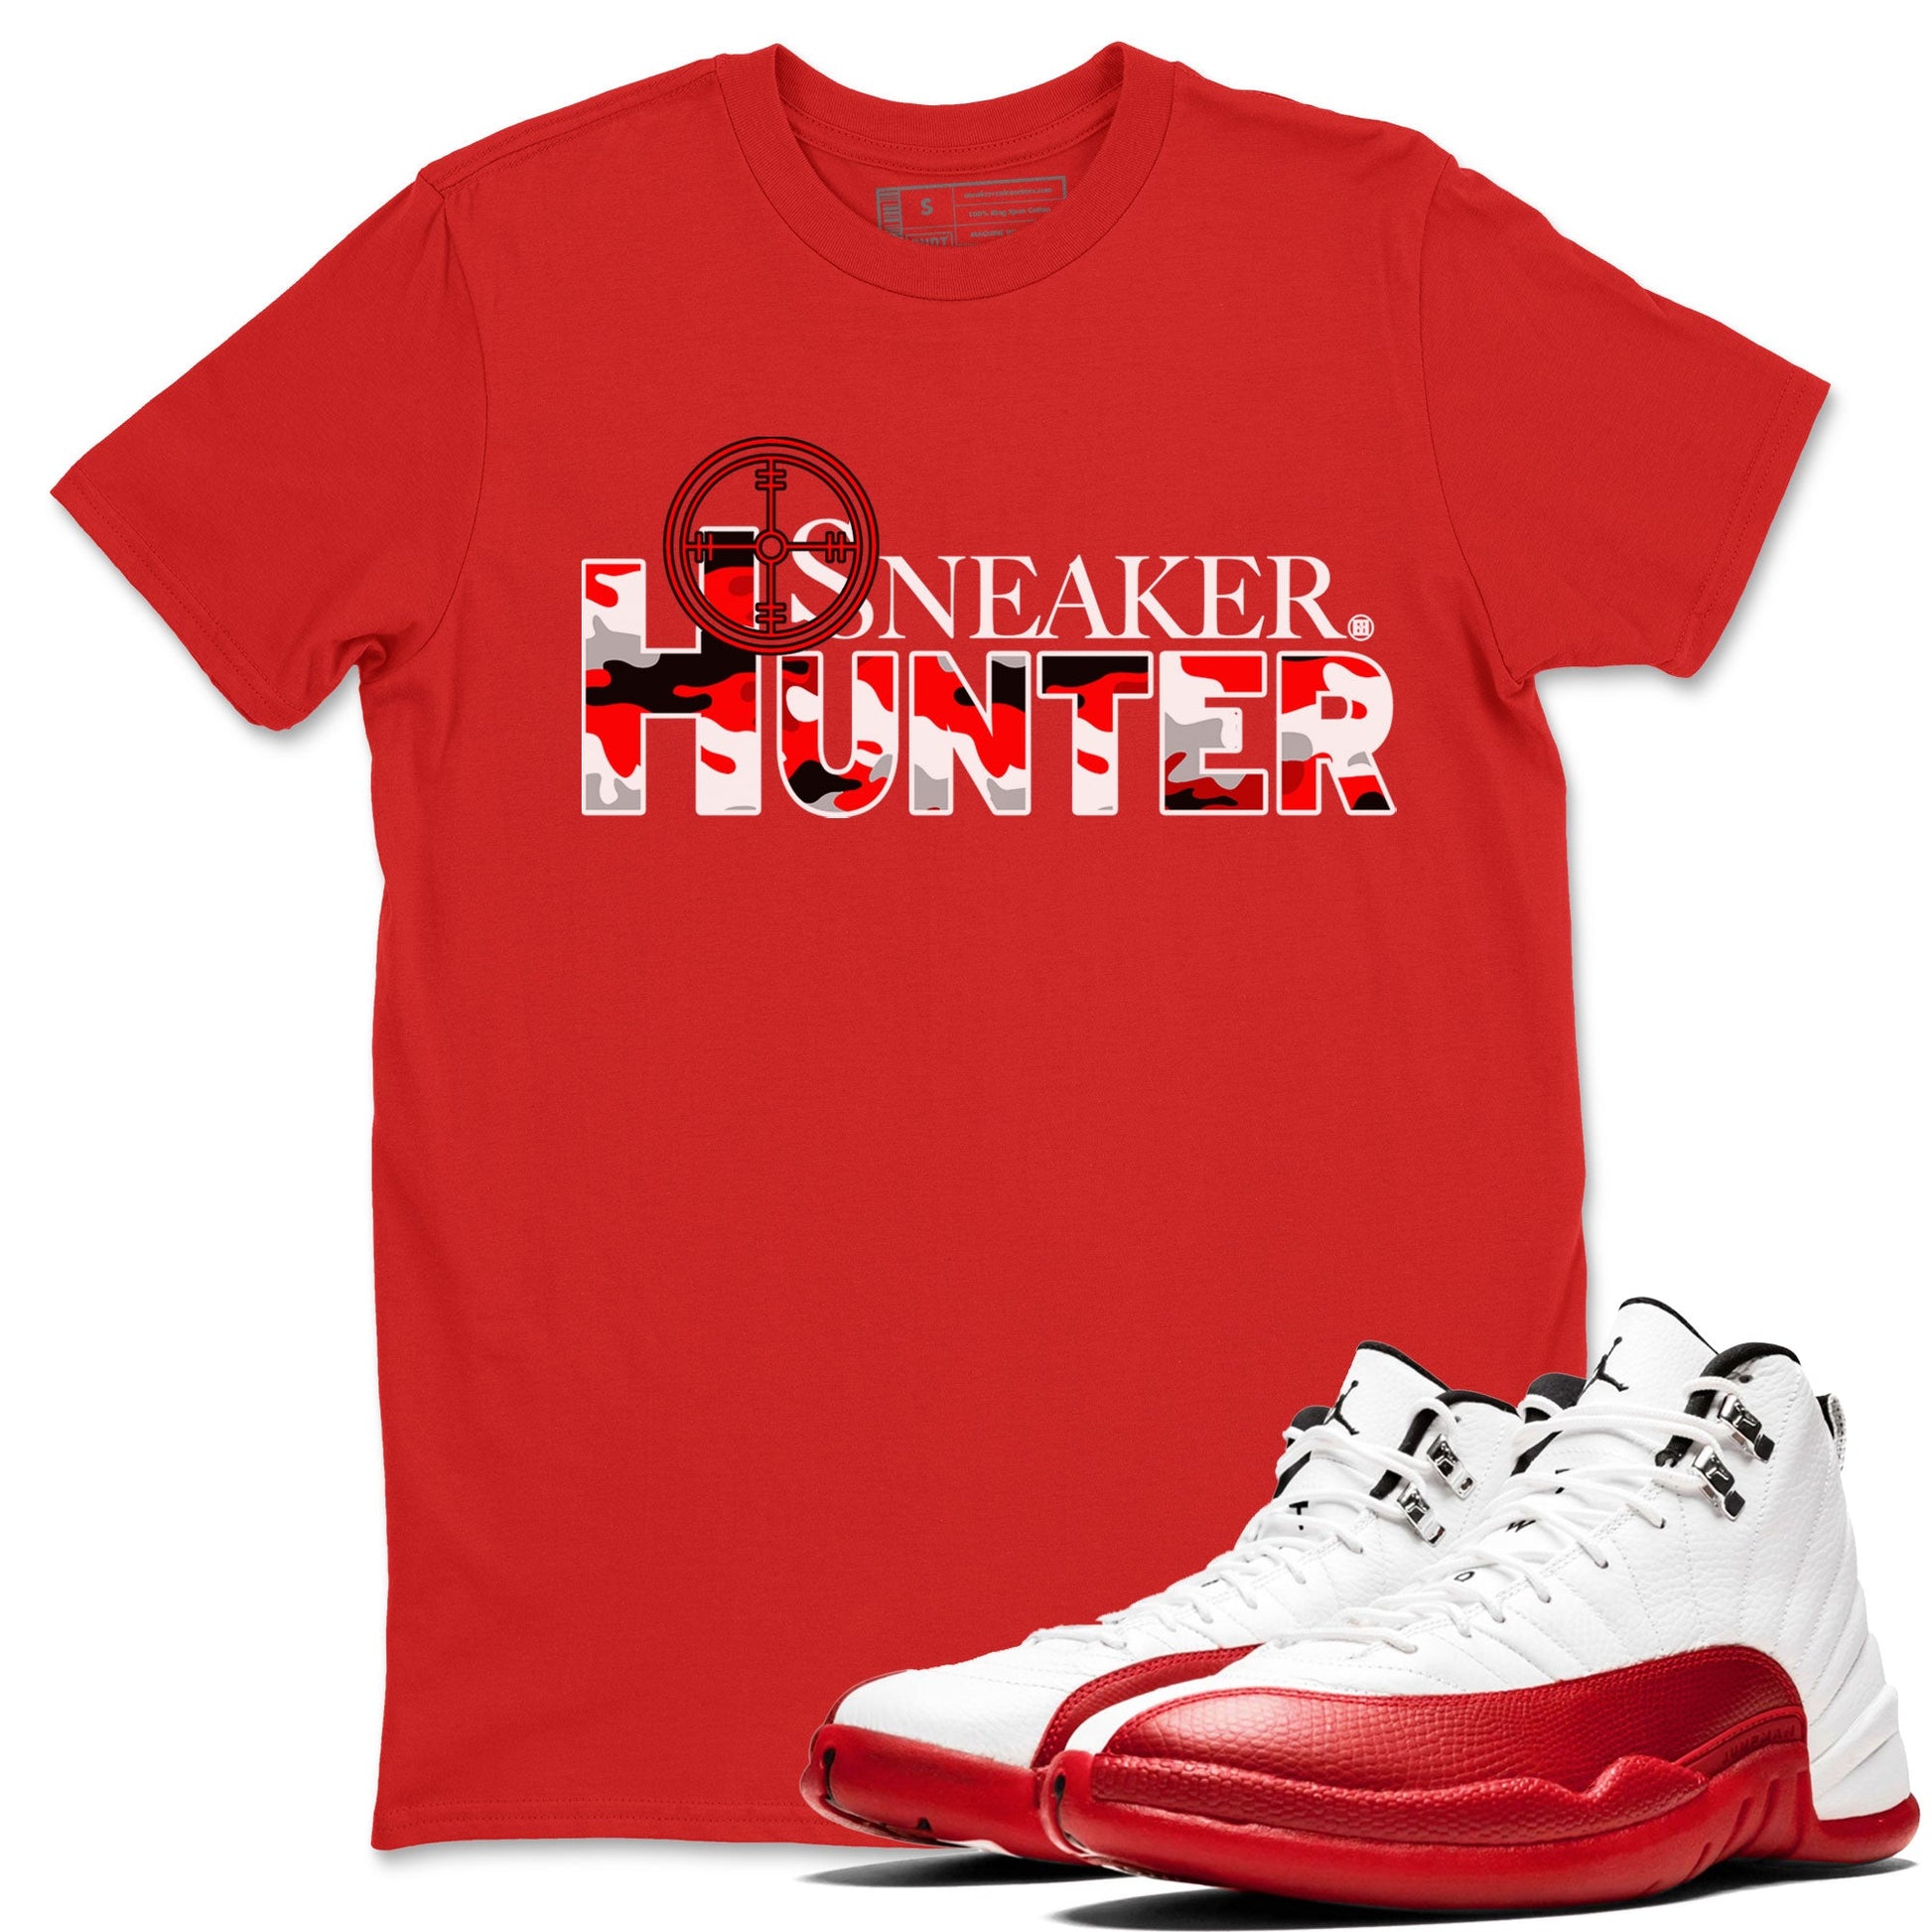 Air Jordan 12 Cherry shirt to match jordans Sneaker Hunter sneaker tees Air Jordan 12 Retro Cherry SNRT Sneaker Release Tees Unisex Red 1 T-Shirt